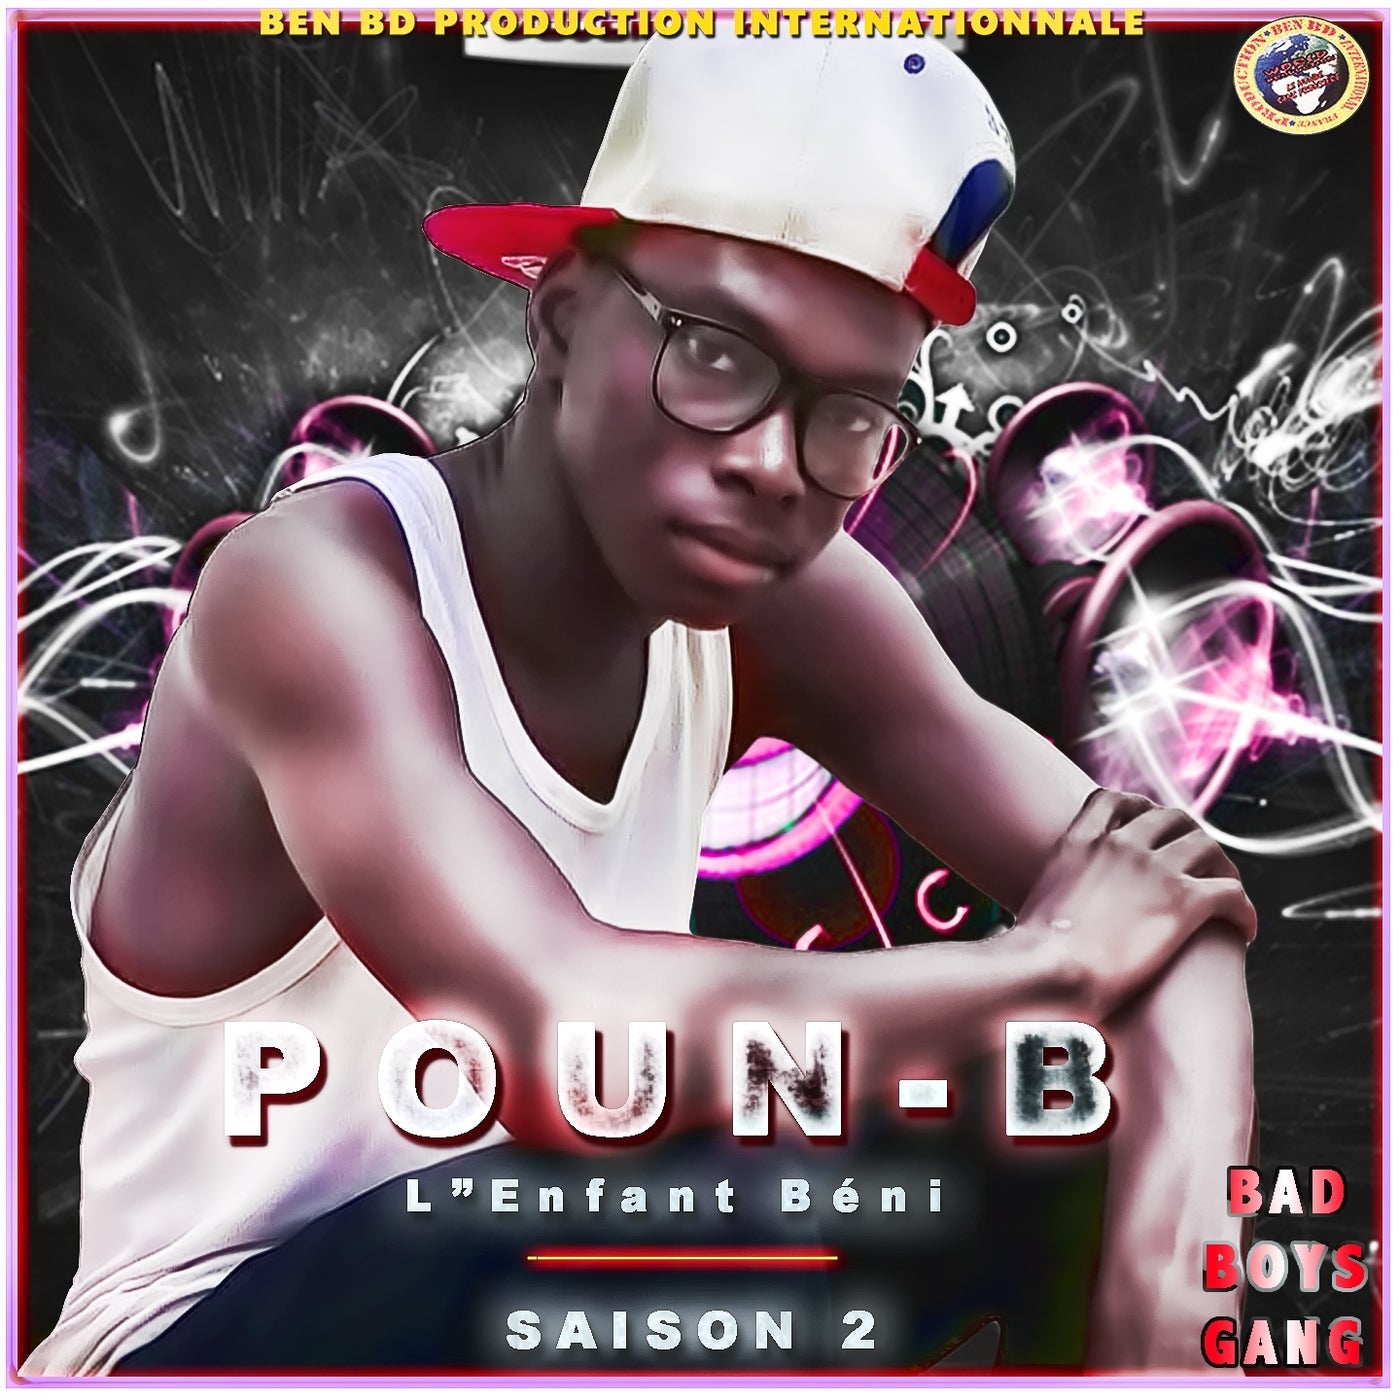 L'Enfant Beni (Bad Boys Gang) by Poun-B on Beatsource